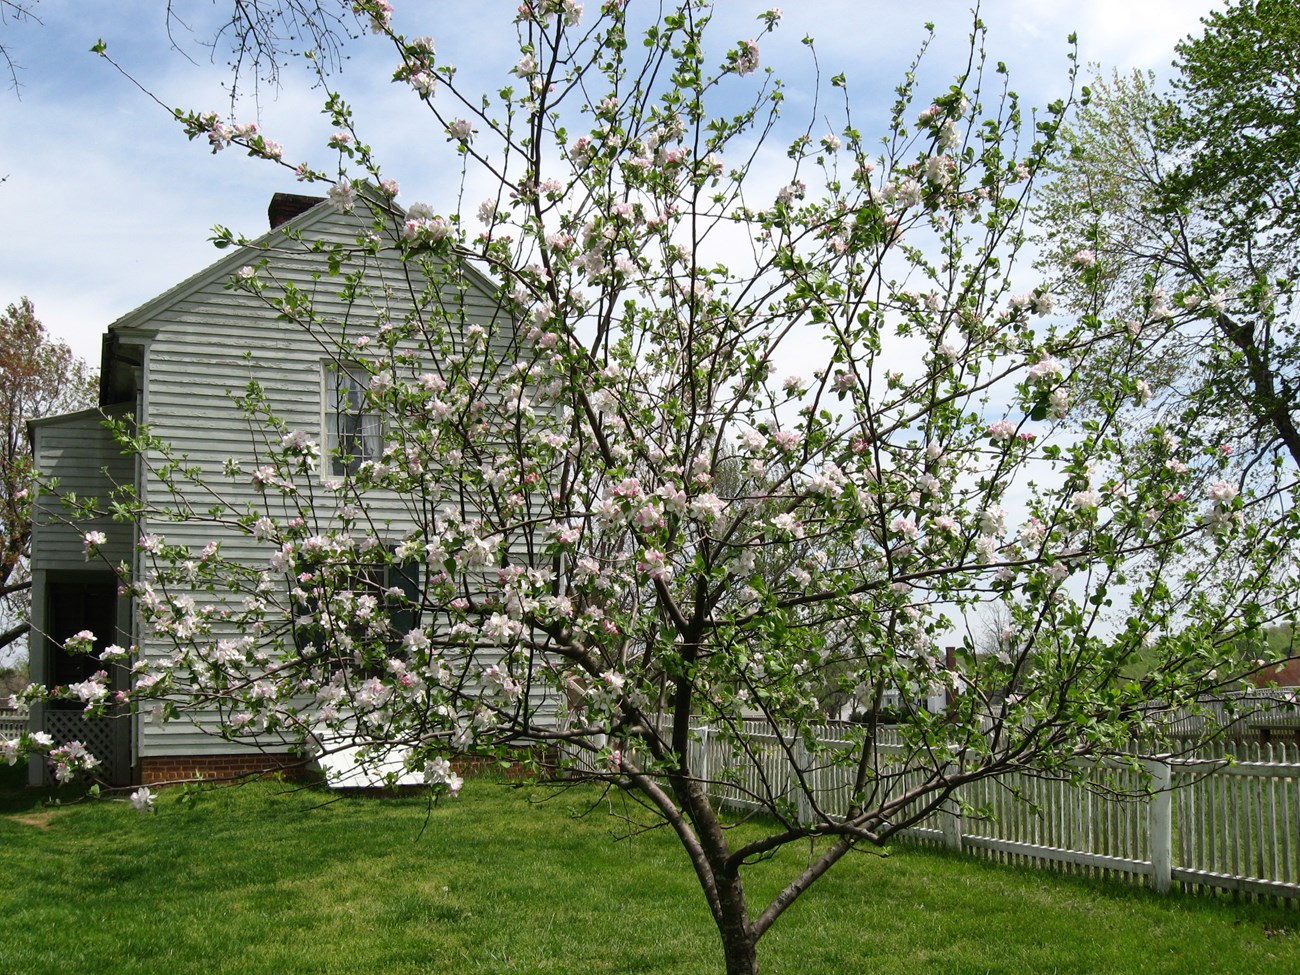 Apple tree blooming behind the Meek's Store.